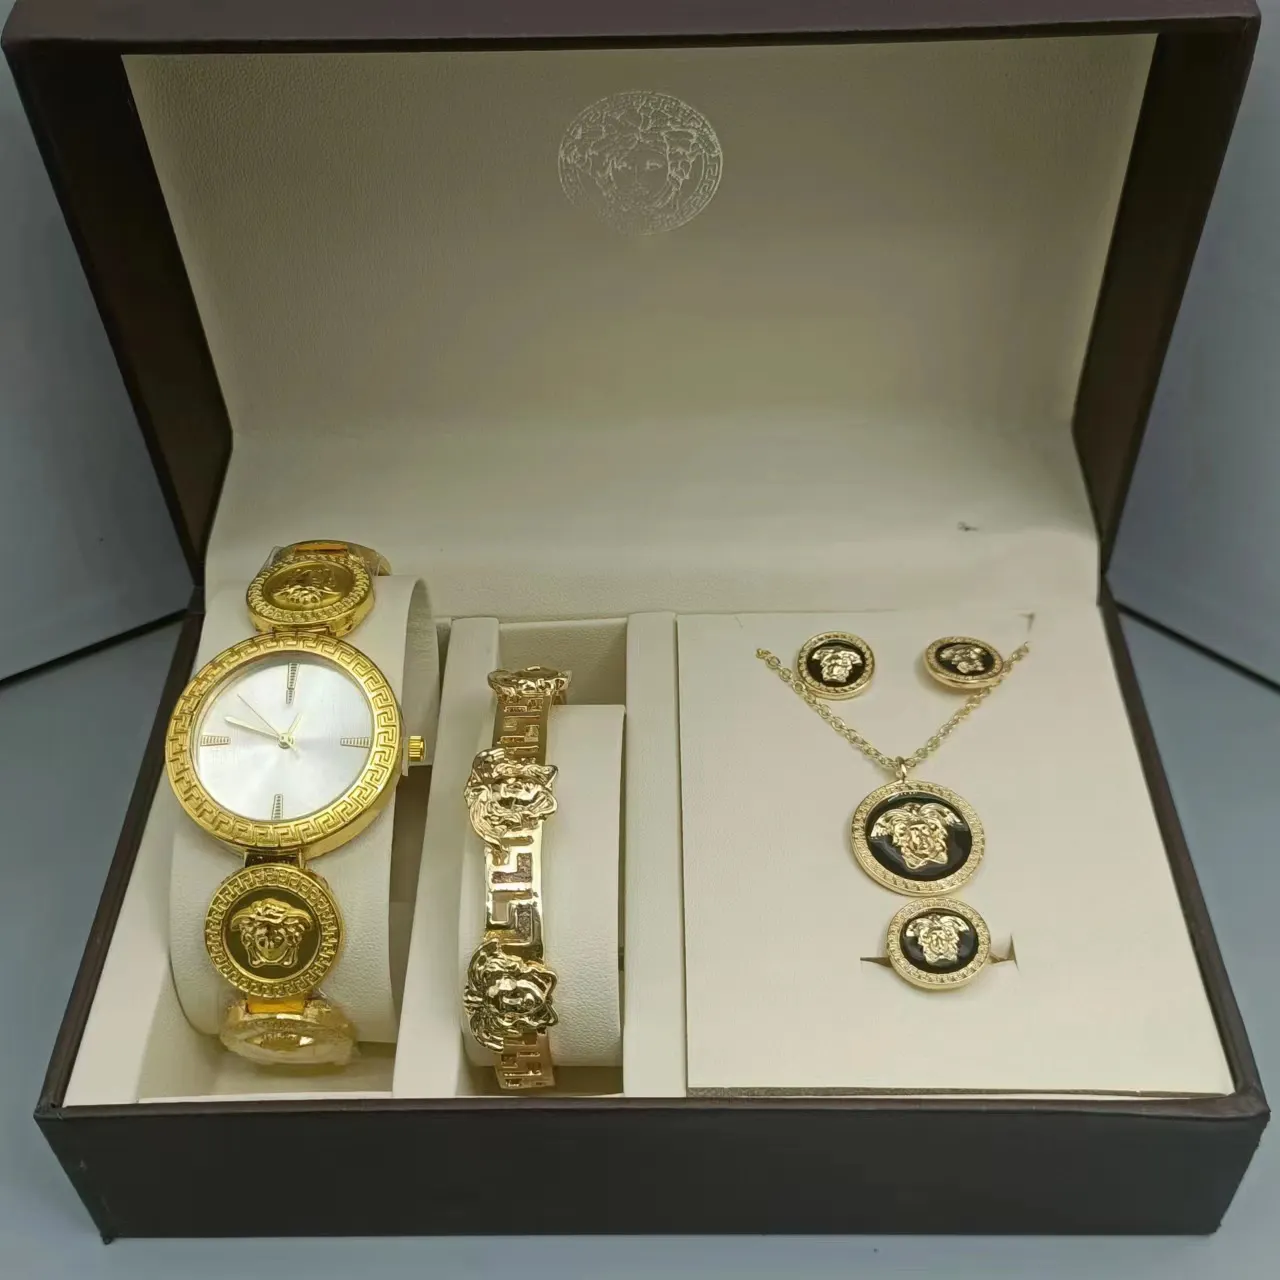 Nueva llegada de moda de lujo relojes de pulsera de cuarzo relojes de diseñador marcas famosas collar brazalete joyería reloj para mujeres y hombres